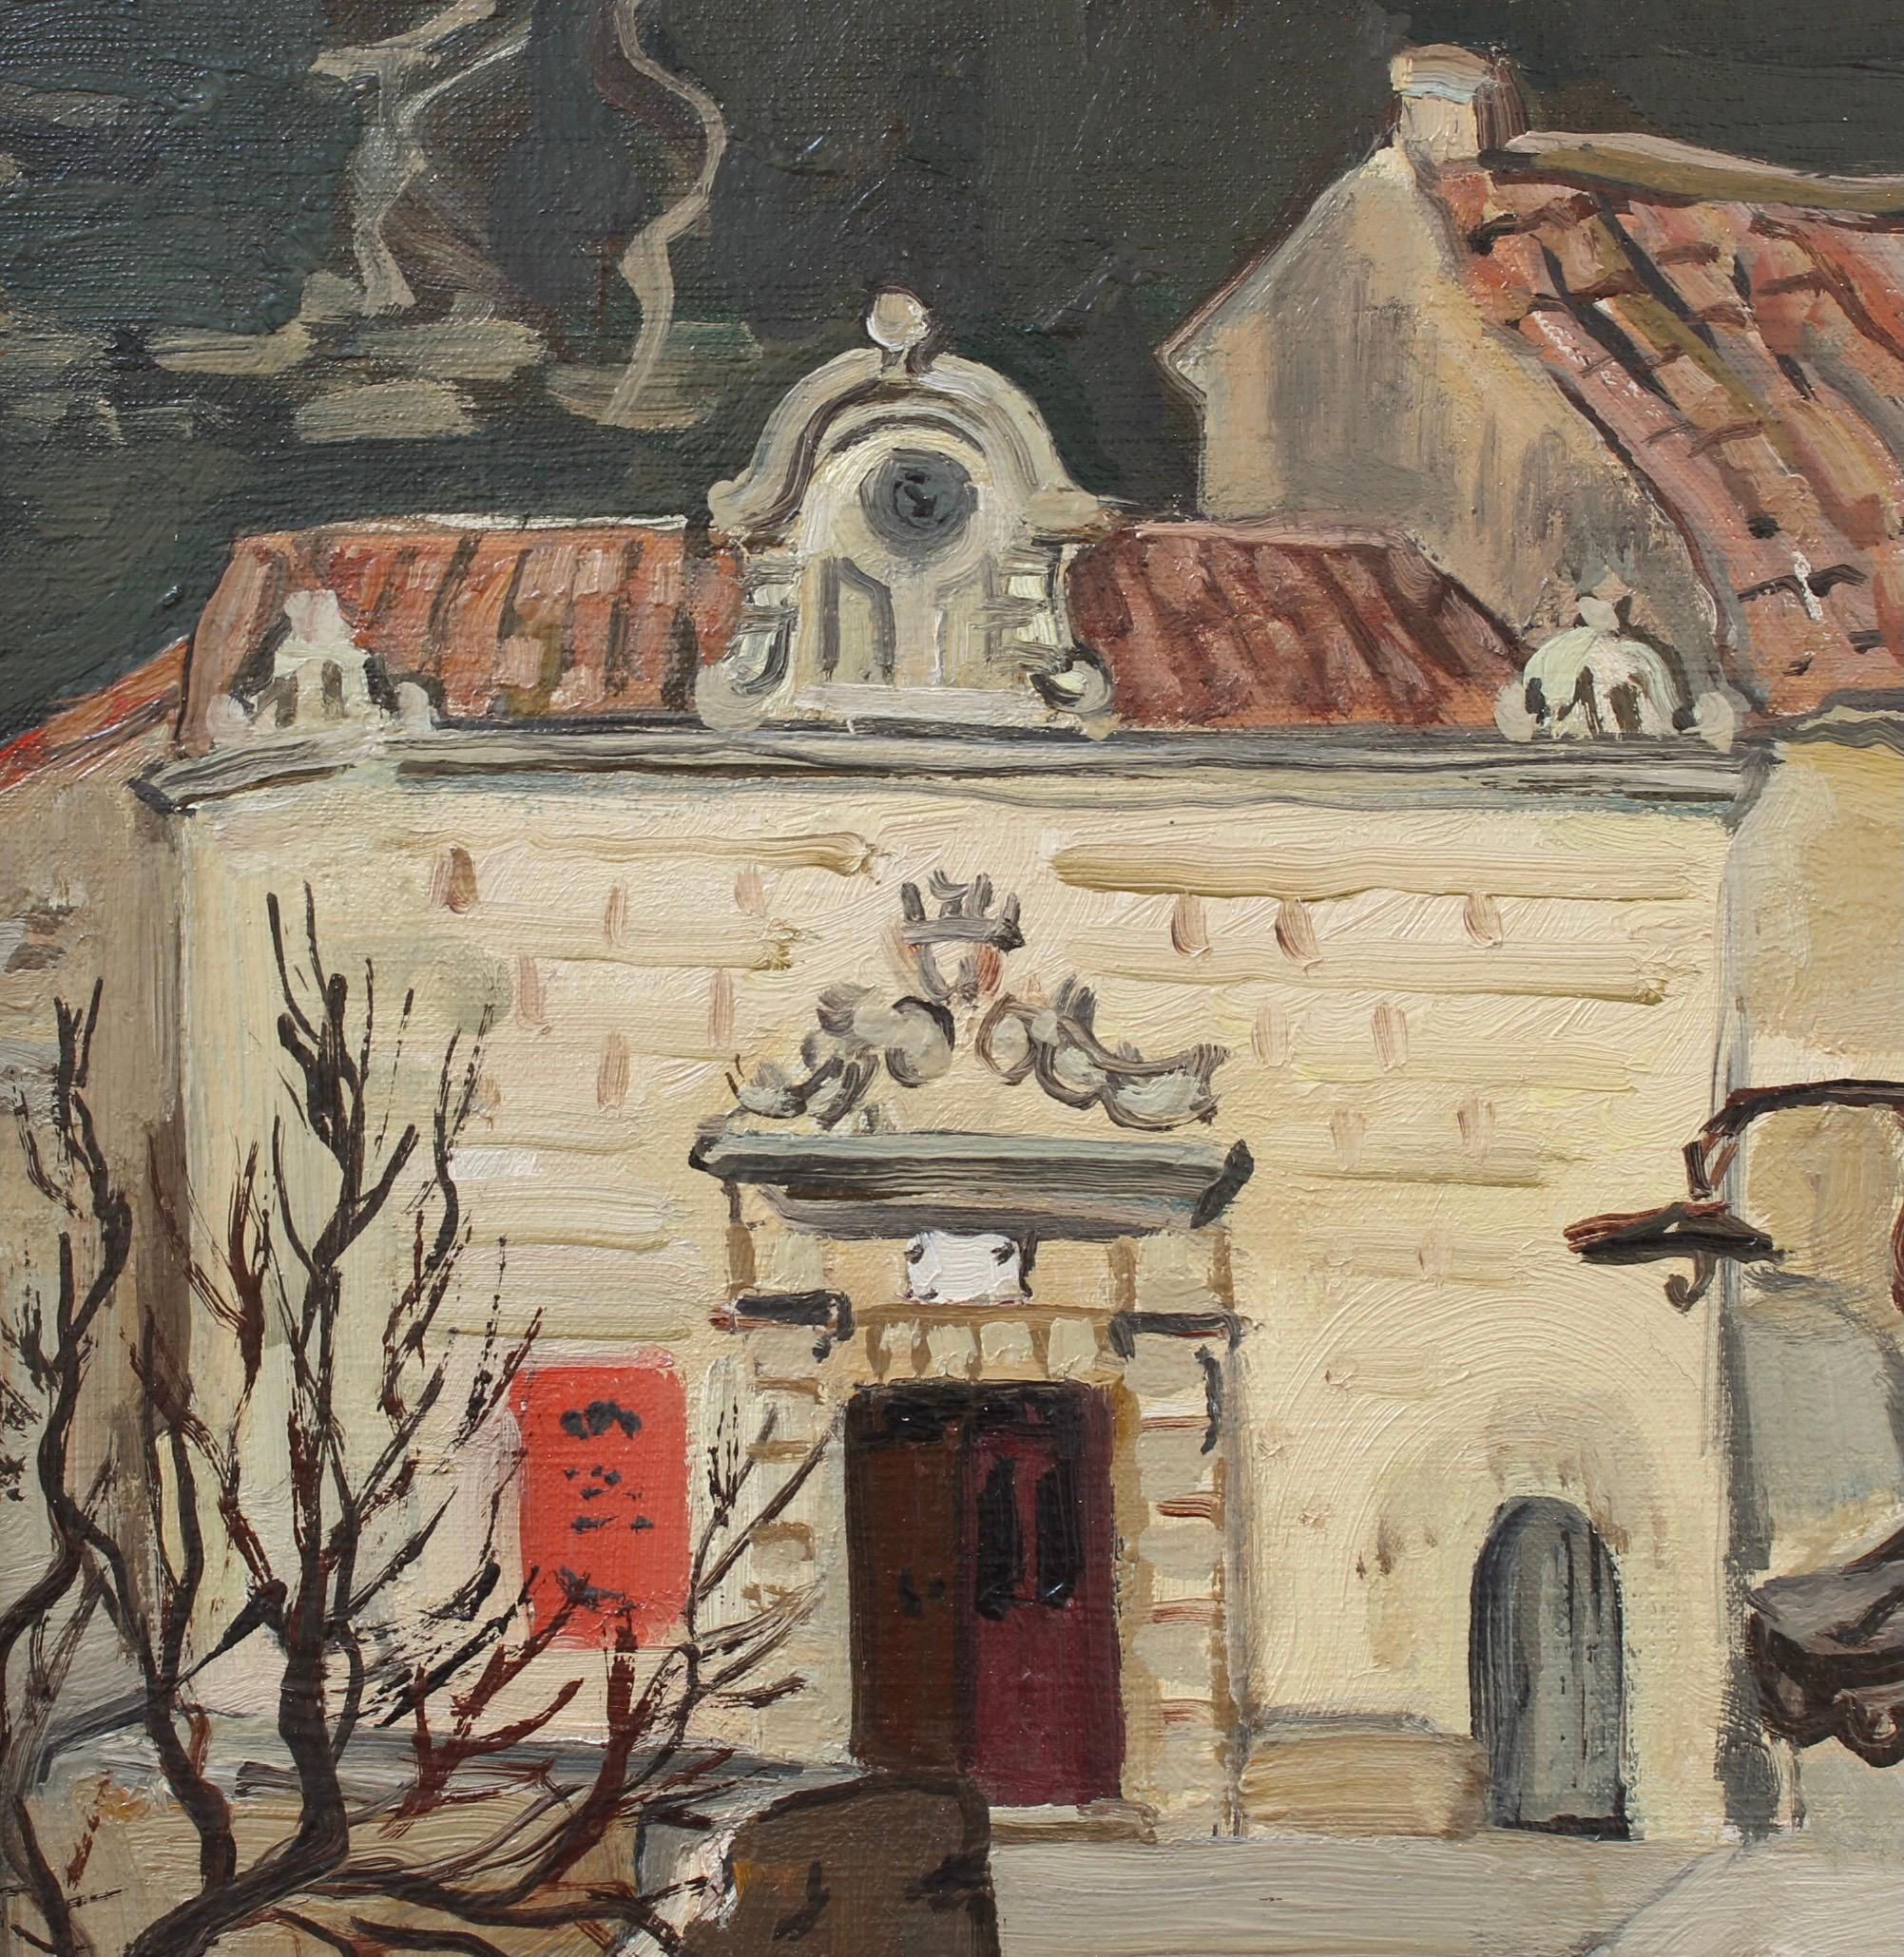 L'hôtel de ville des Baux-de-Provence, huile sur toile, par Yves Brayer (1946). Ayant passé plusieurs mois par an en Provence, l'artiste a créé des dizaines d'œuvres des Baux-de-Provence et des environs. Cette œuvre sereine représente l'ancienne